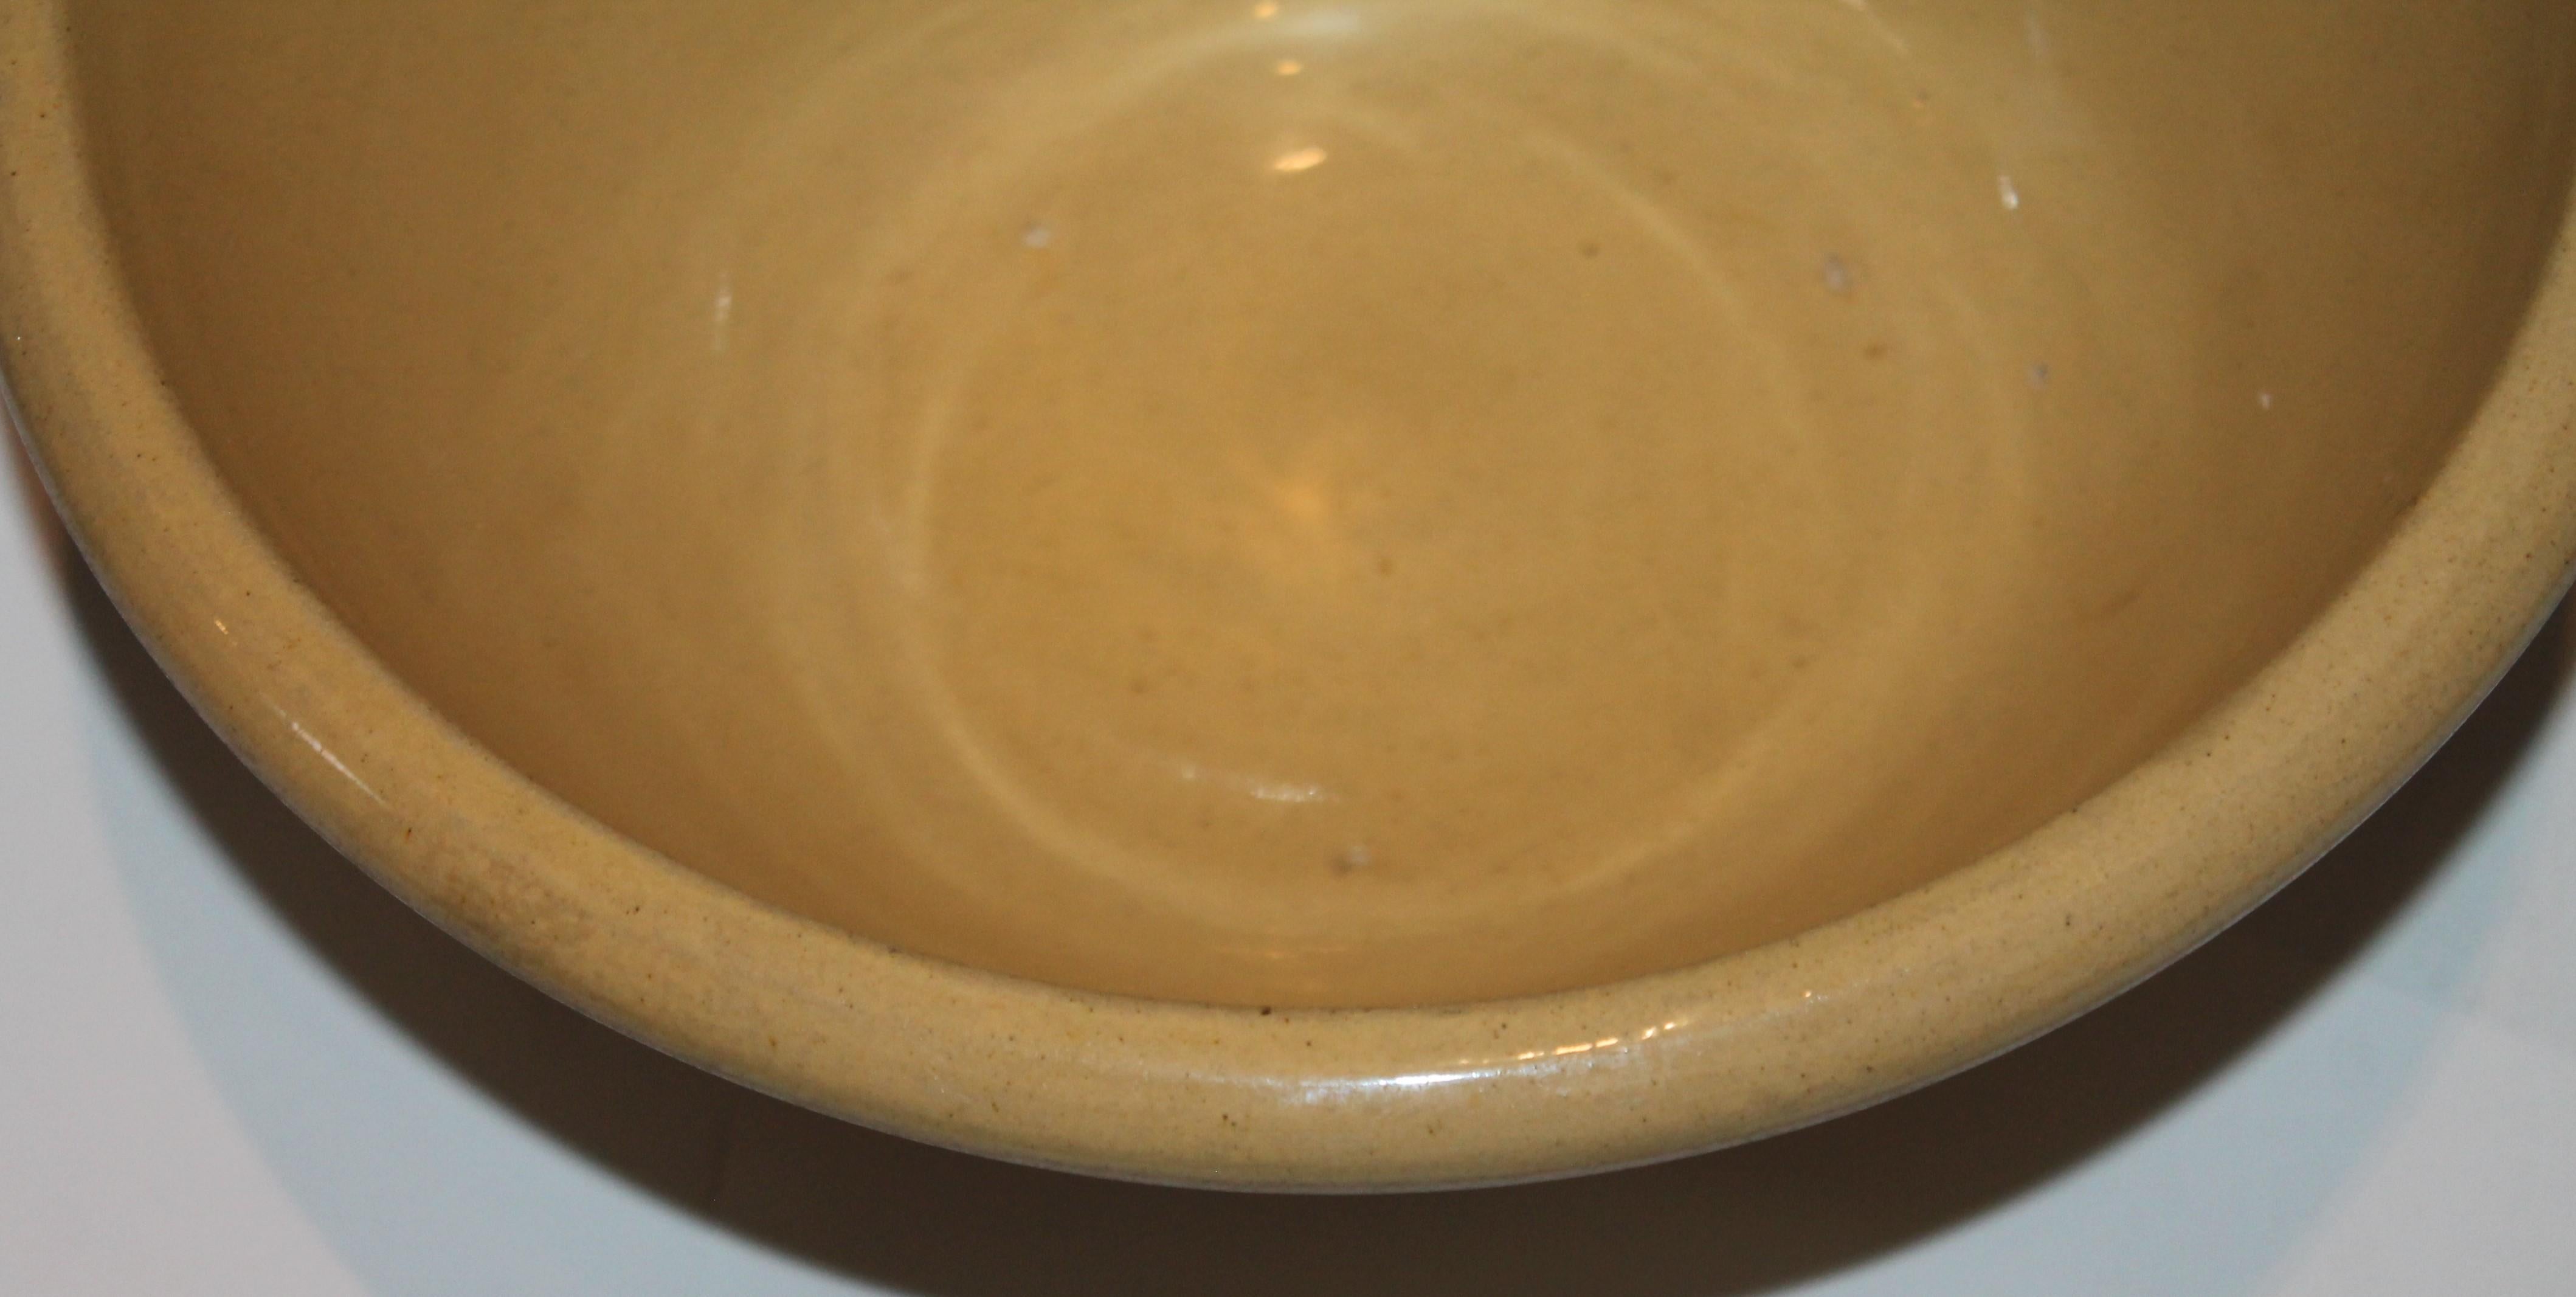 yellow ware mixing bowls